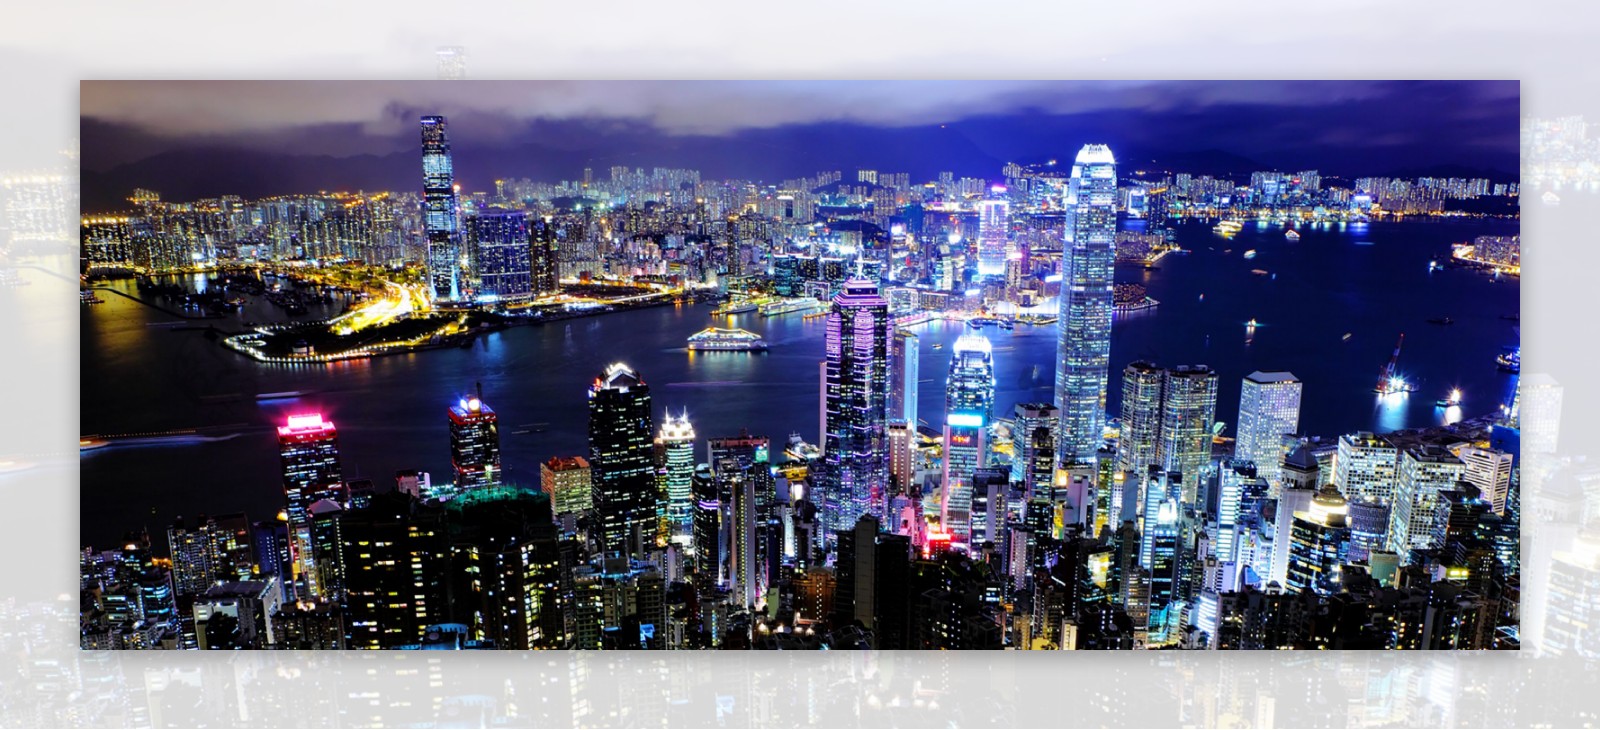 中国香港夜景繁华都市现代化全景